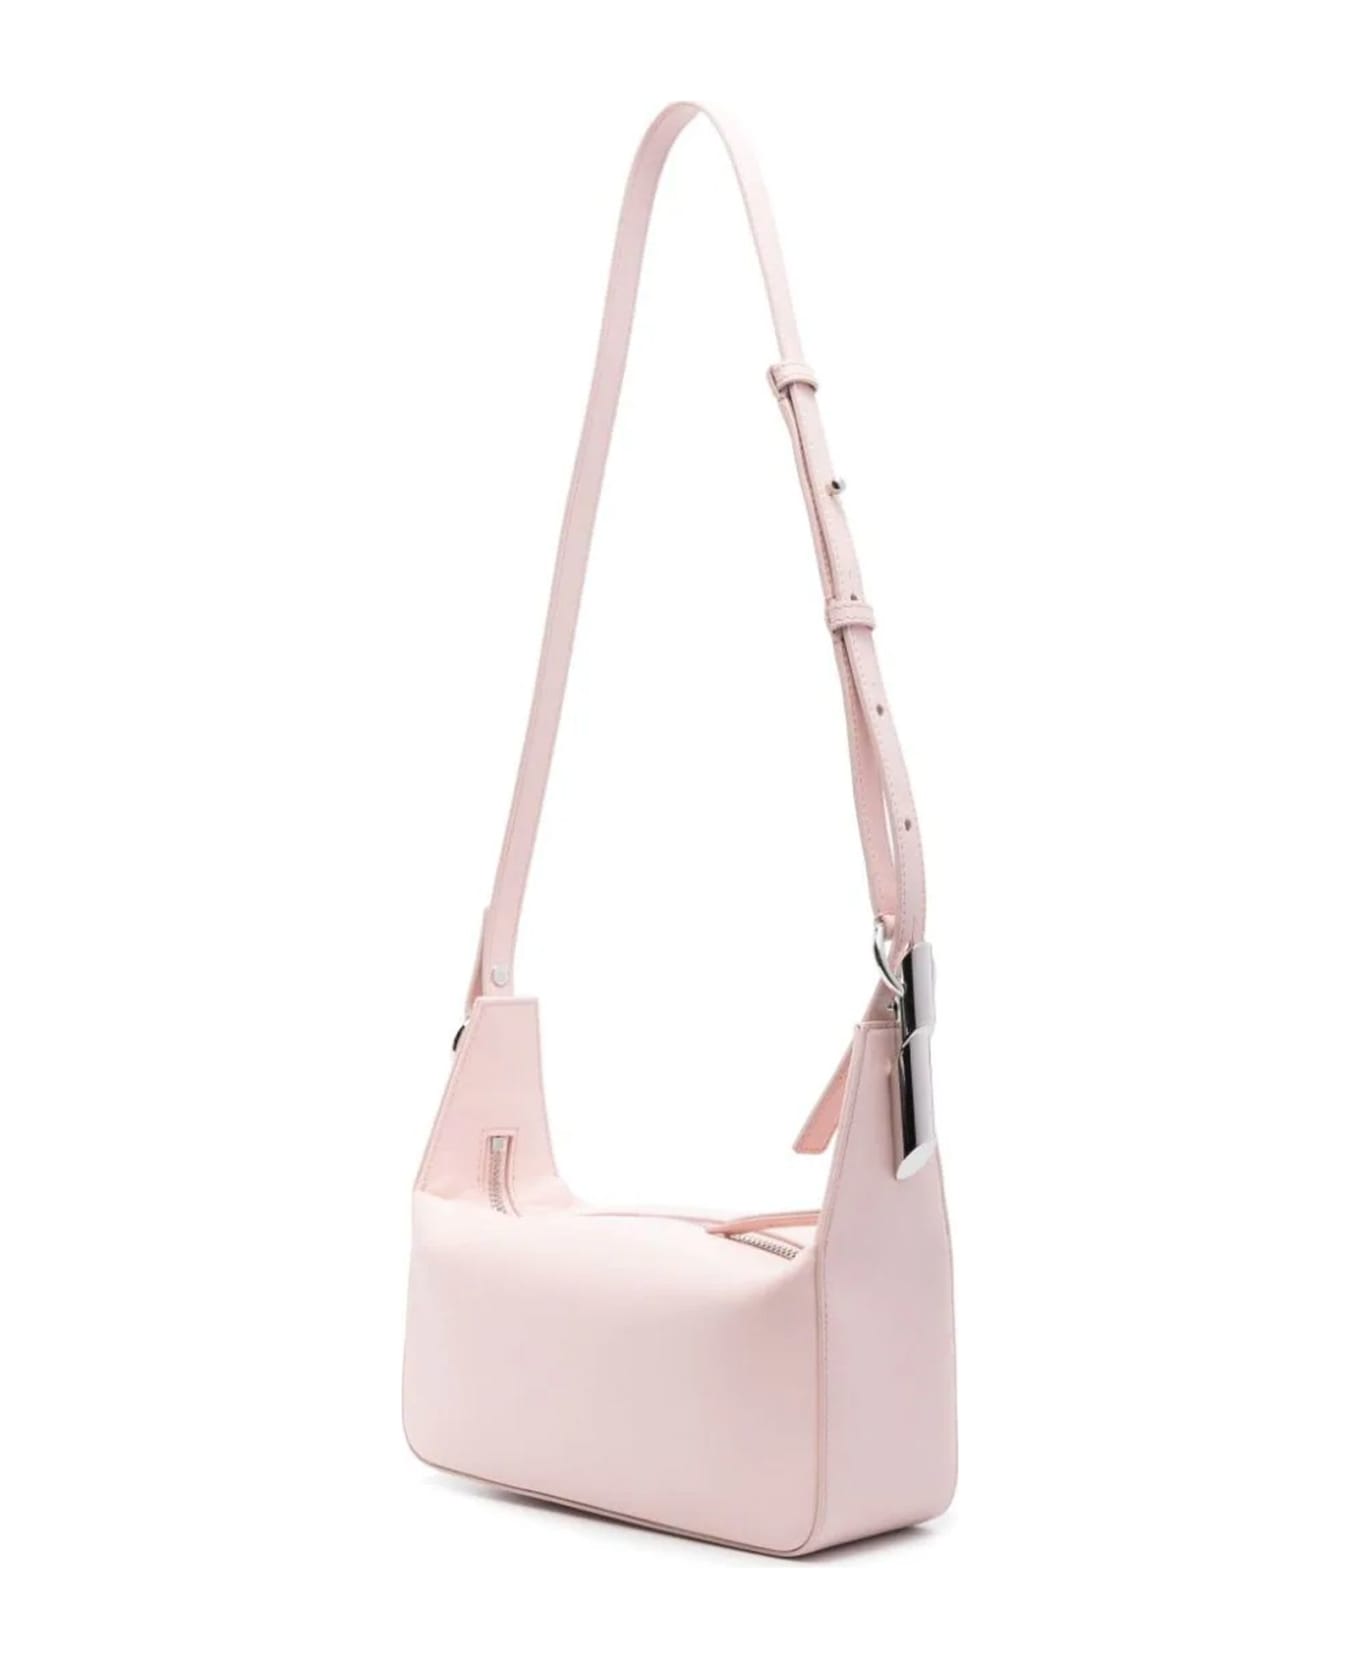 Lanvin Light Pink Tasche Leather Shoulder Bag - Pink ショルダーバッグ